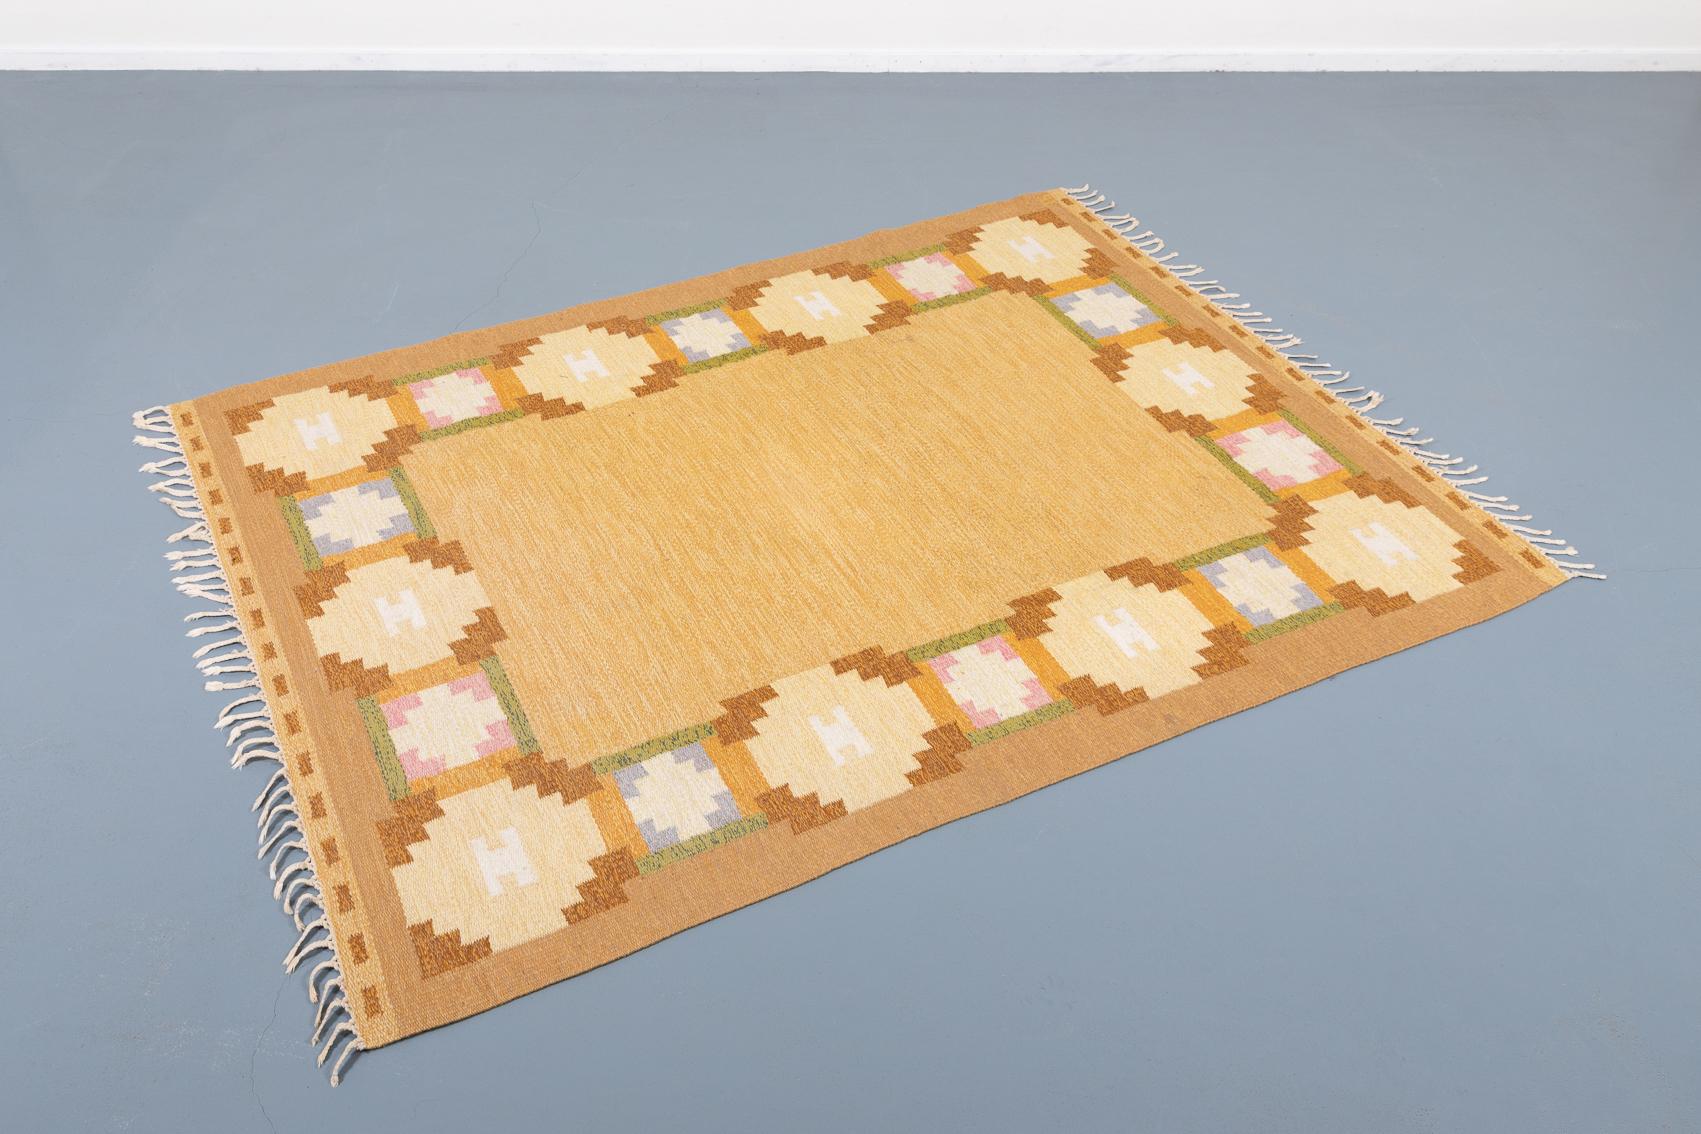 Tapis à tissage plat d'Ingegerd Silow, Suède. Ce tapis tissé à la main attire immédiatement le regard par son design distinctif et sa palette originale de couleurs pastel. Chaque élément est parfaitement équilibré, créant une composition